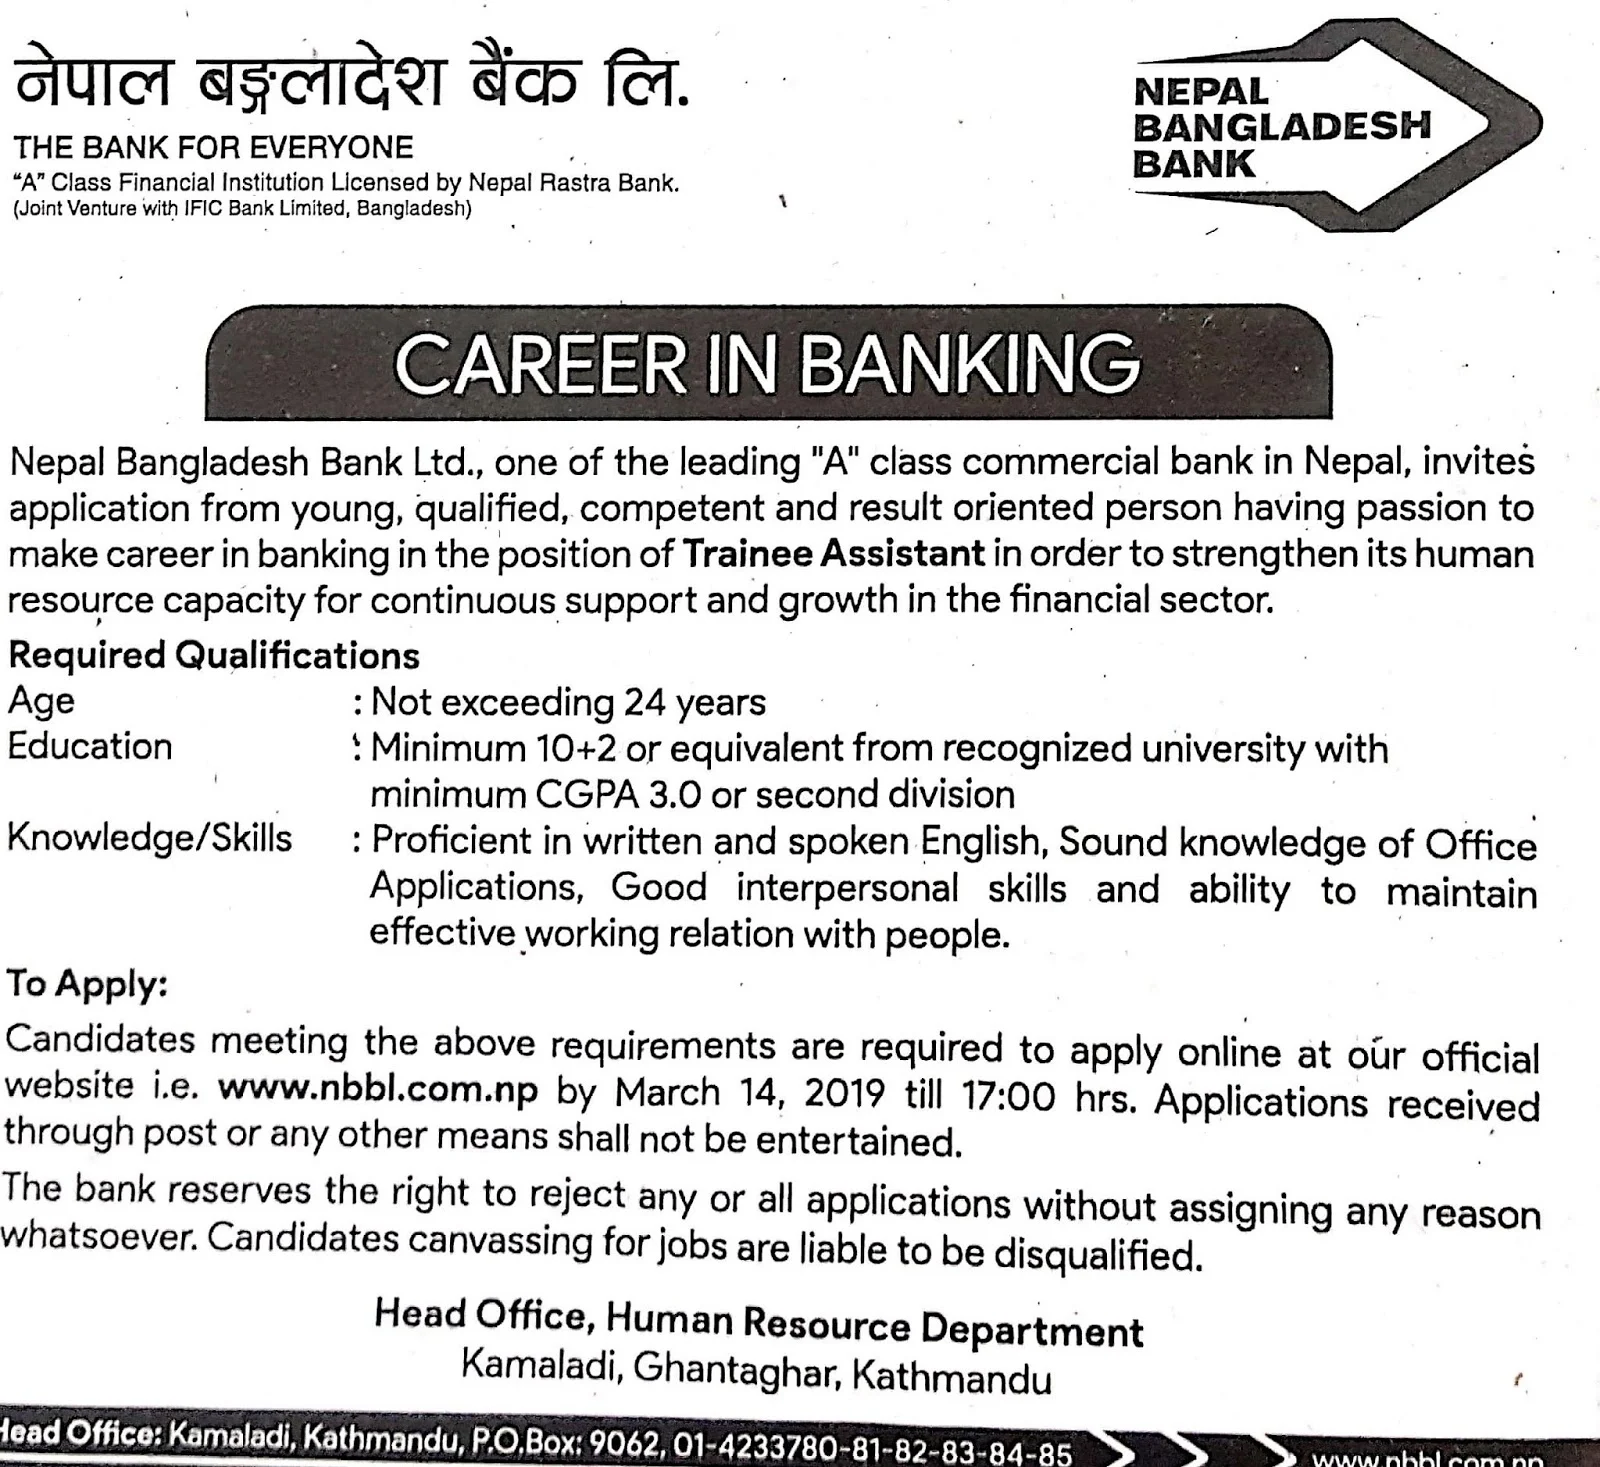 Career in Banking at Nepal Bangladesh Bank